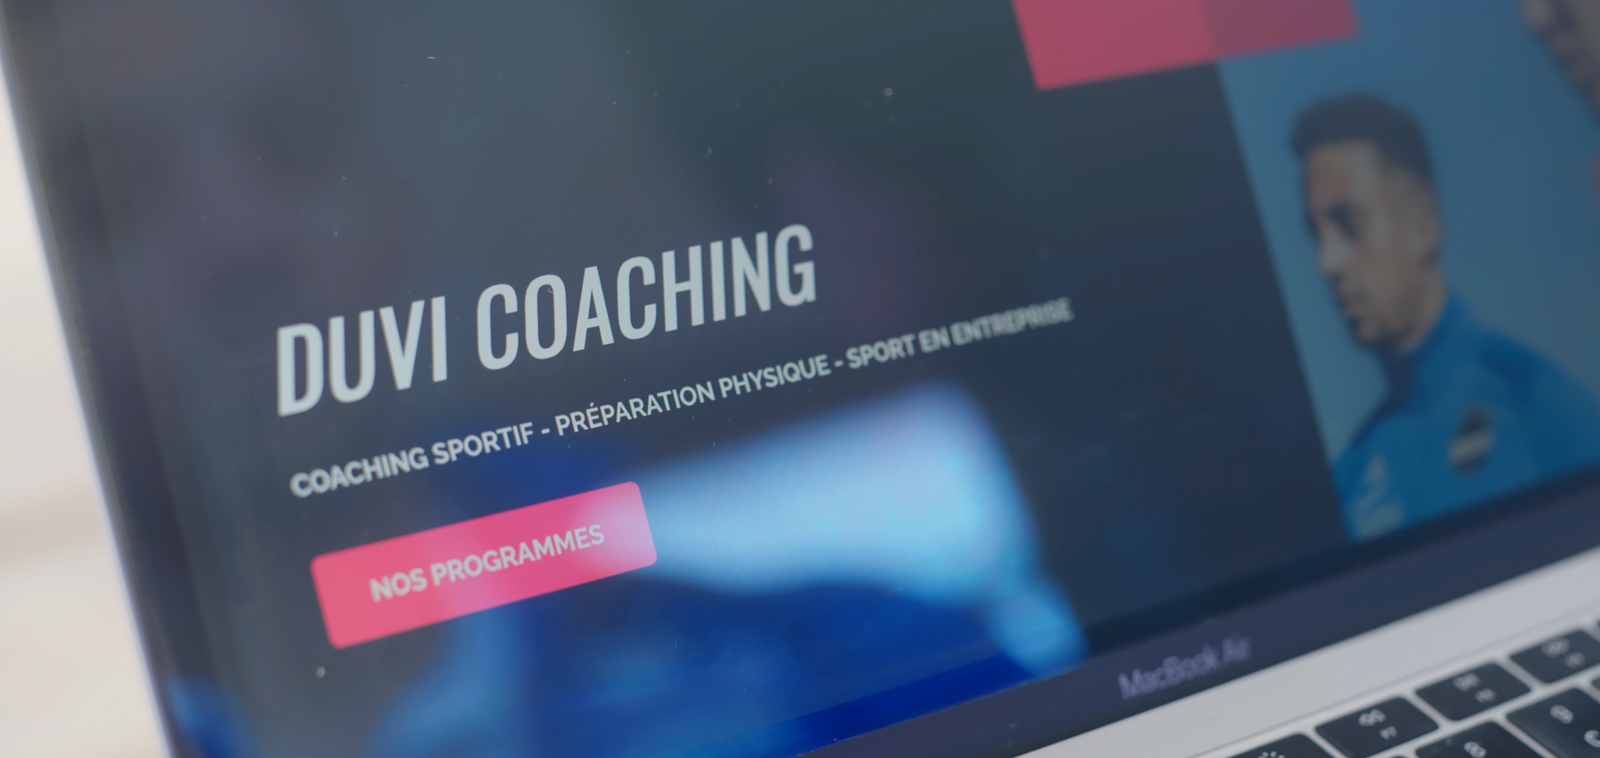 Tous les coachings proposés par Duvi-Coaching sur le site https://www.duvi-coaching.fr/